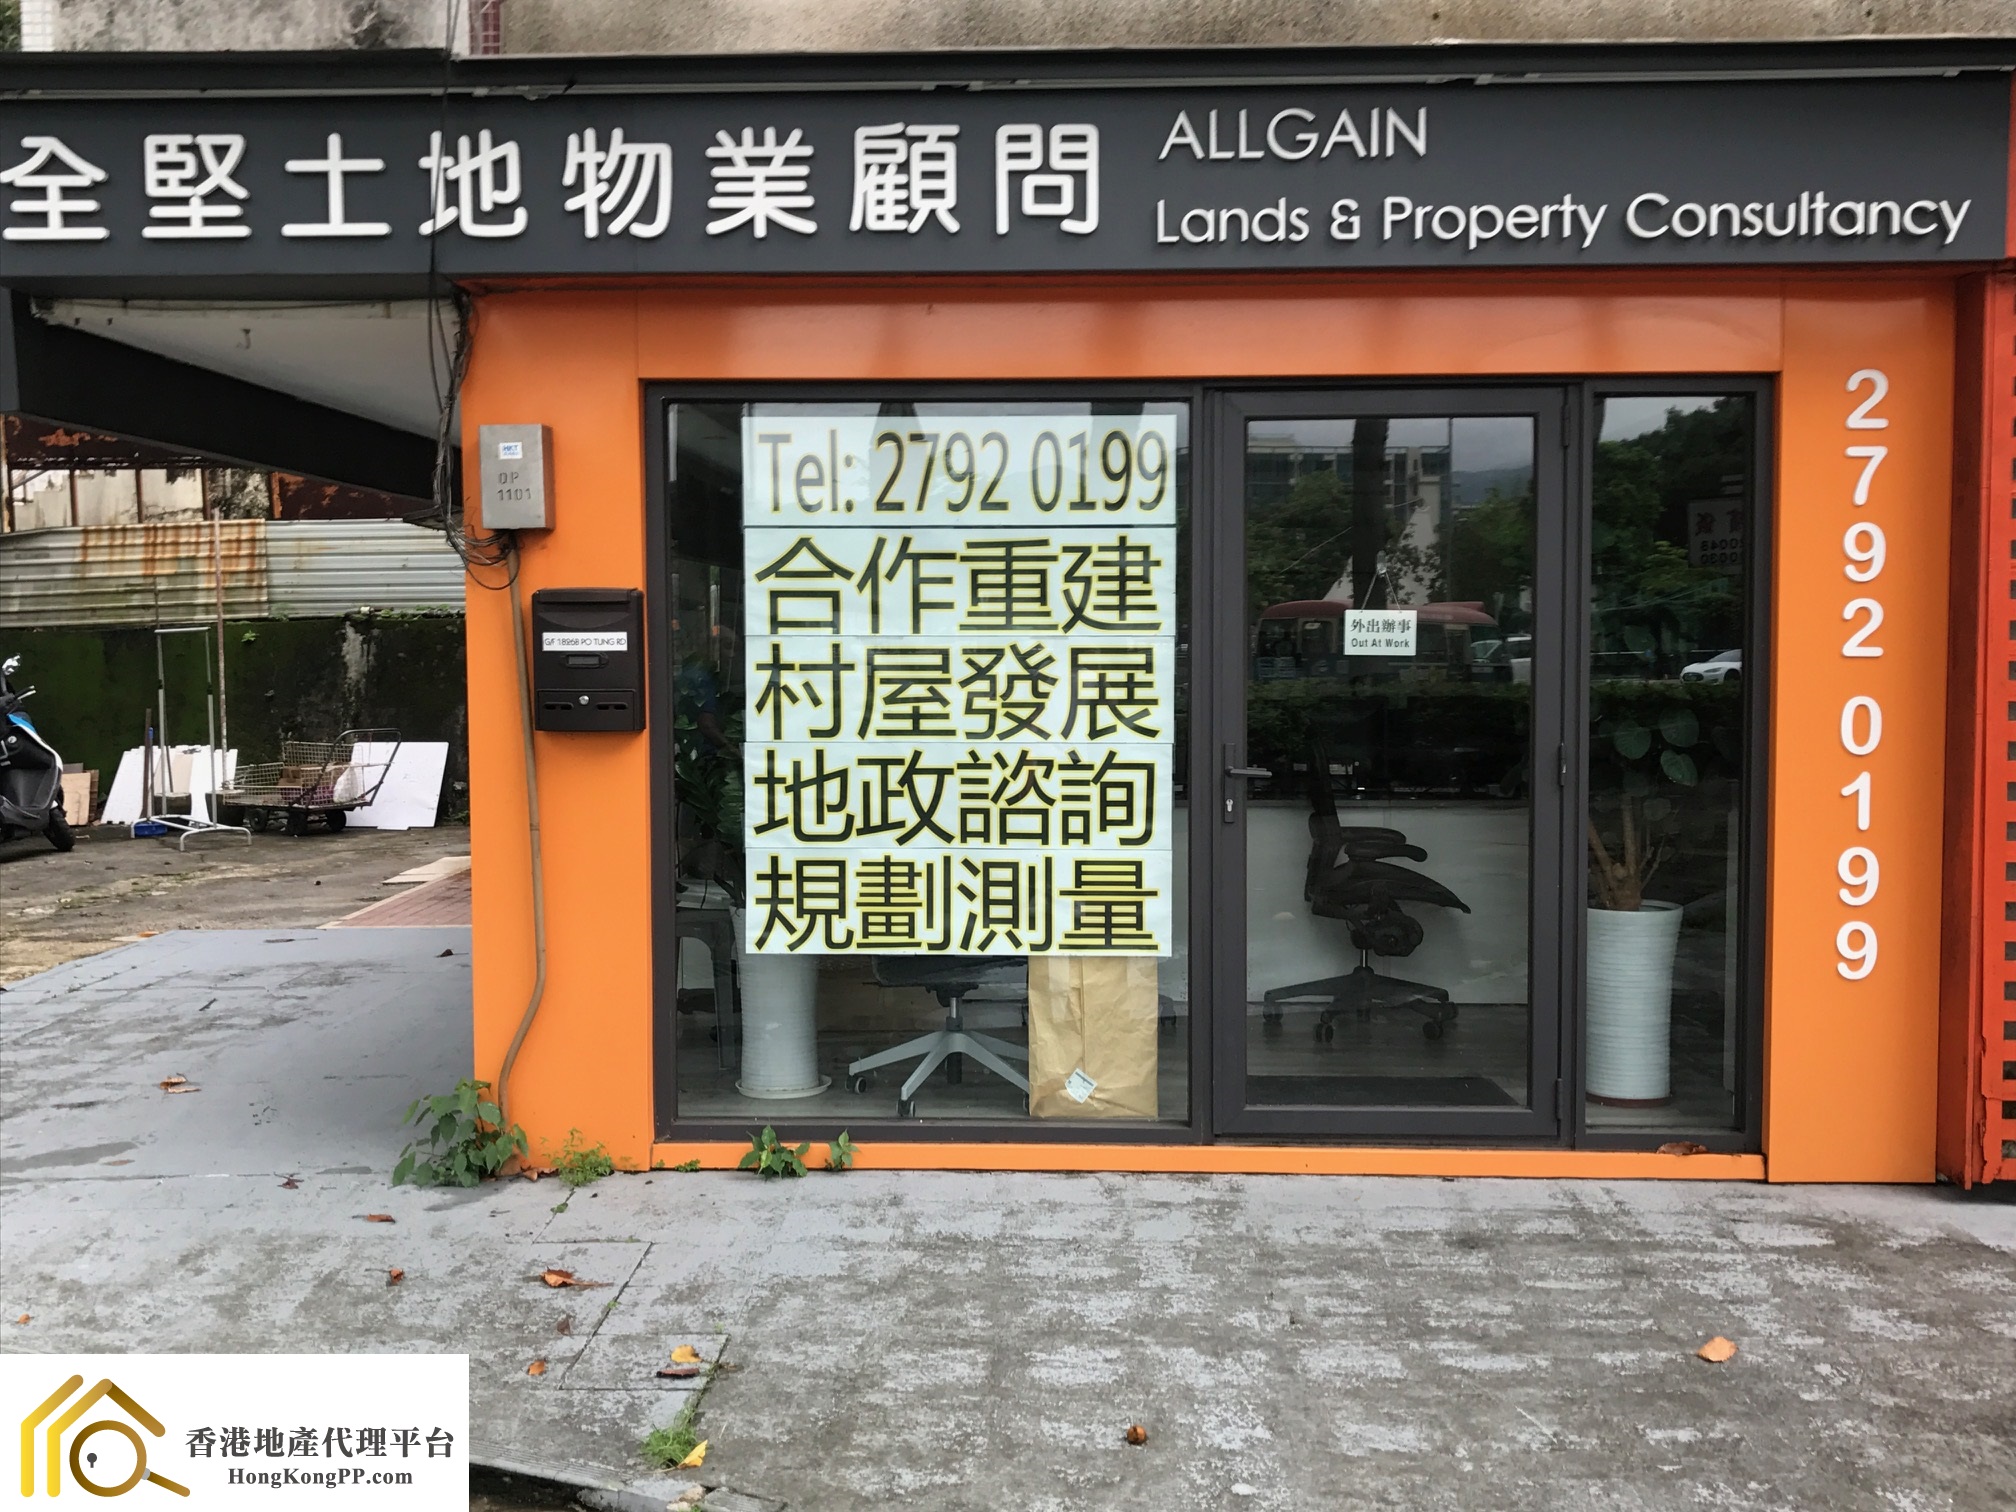 車位地產代理: 全堅土地物業顧問 Allgain Lands & Property Consultancy Ltd